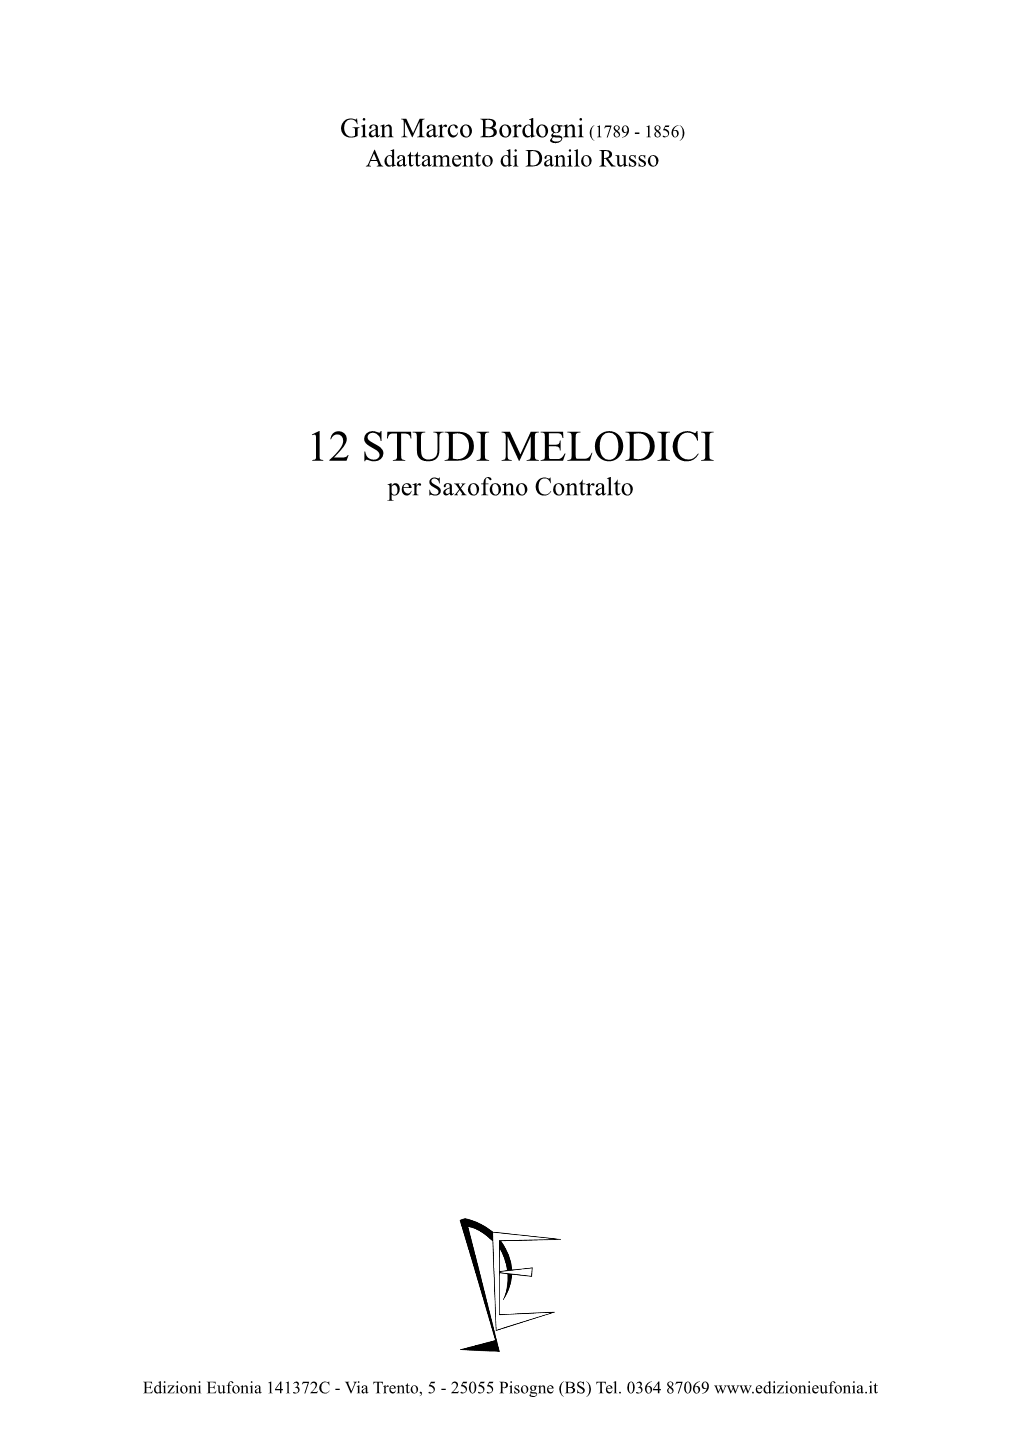 12 STUDI MELODICI Per Saxofono Contralto